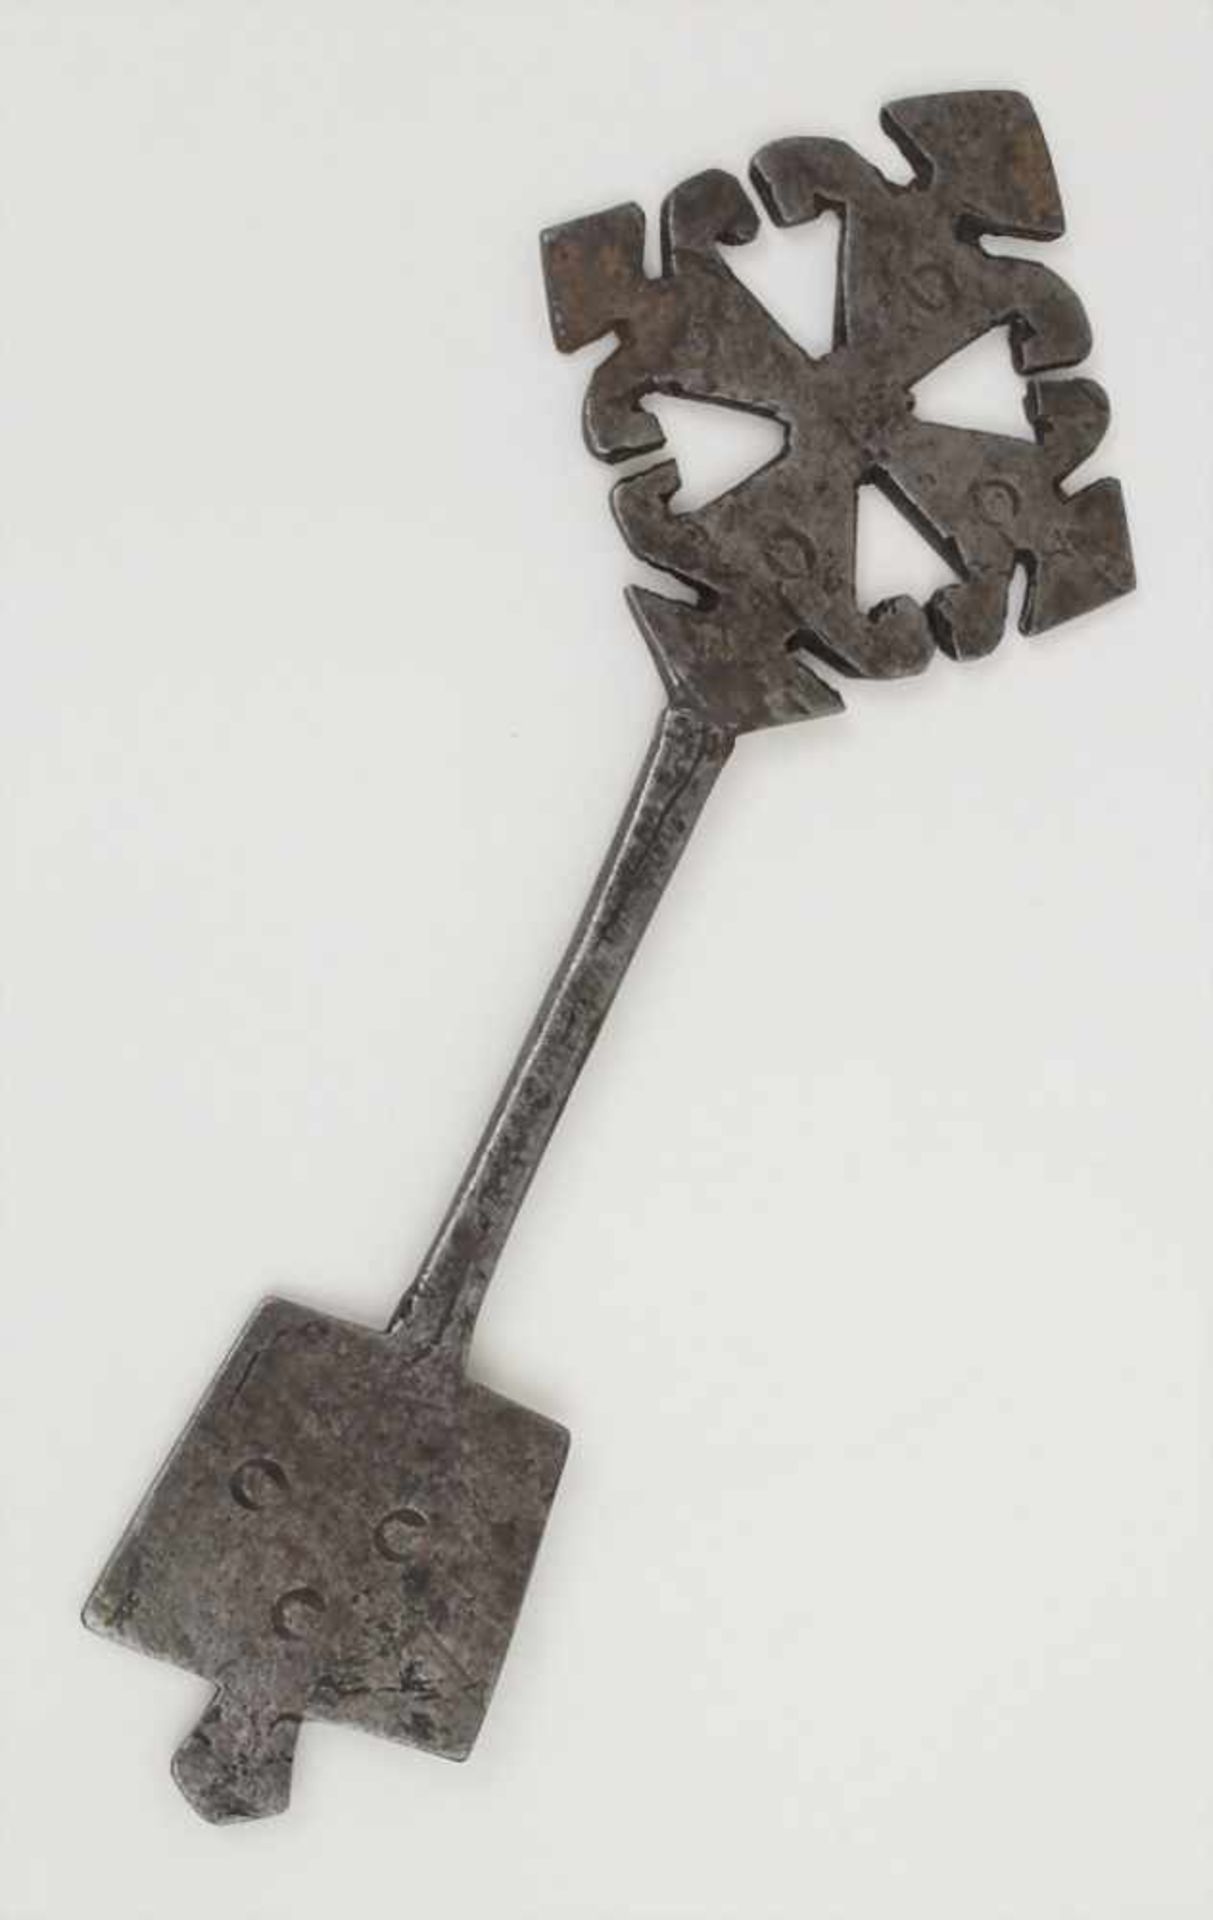 Koptisches Kreuz / A Coptic cross, 19. Jh. Material: Eisen,Länge: 21 cm,Zustand: gut+Material: